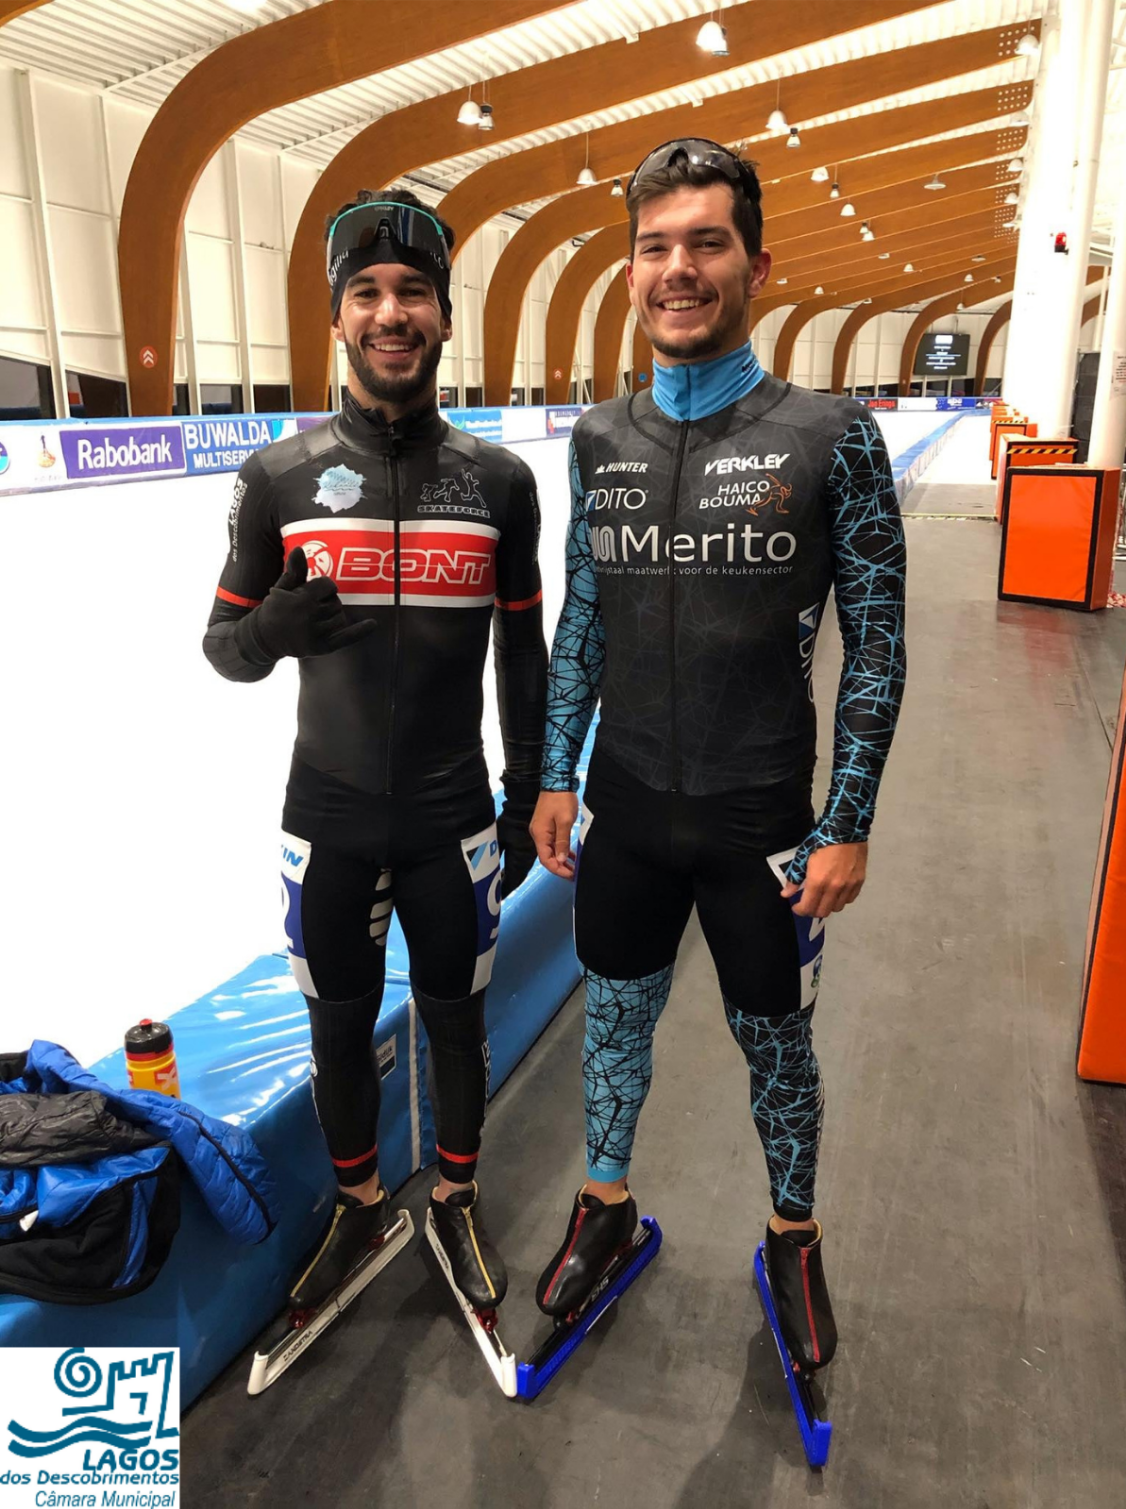 Diogo Marreiros bate Recorde Nacional de Patinagem no Gelo. Miguel Bravo conquista 10.º lugar nos 1000 metros